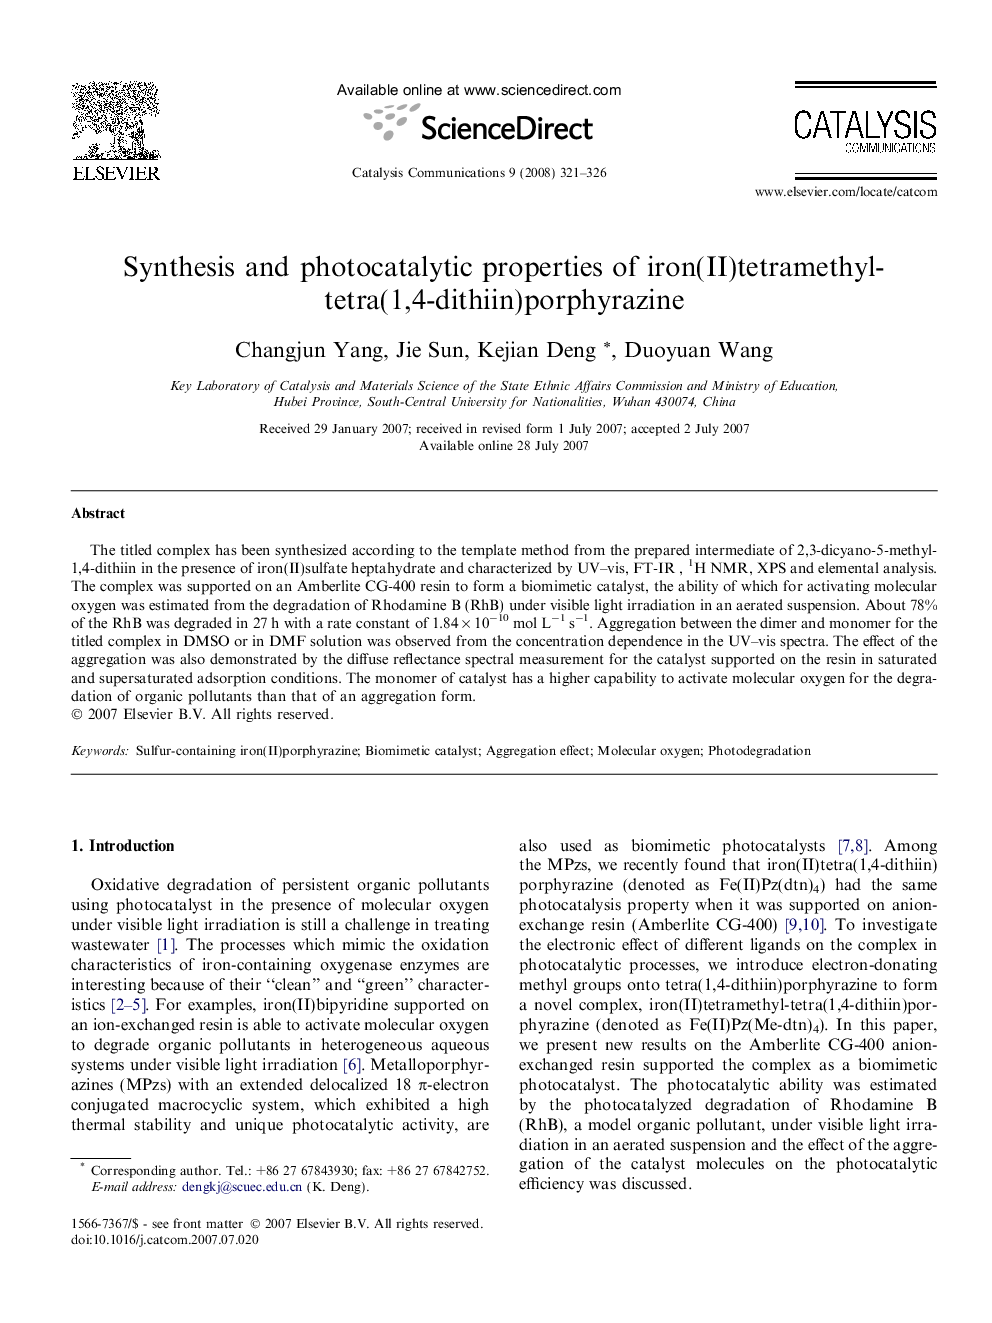 Synthesis and photocatalytic properties of iron(II)tetramethyl- tetra(1,4-dithiin)porphyrazine